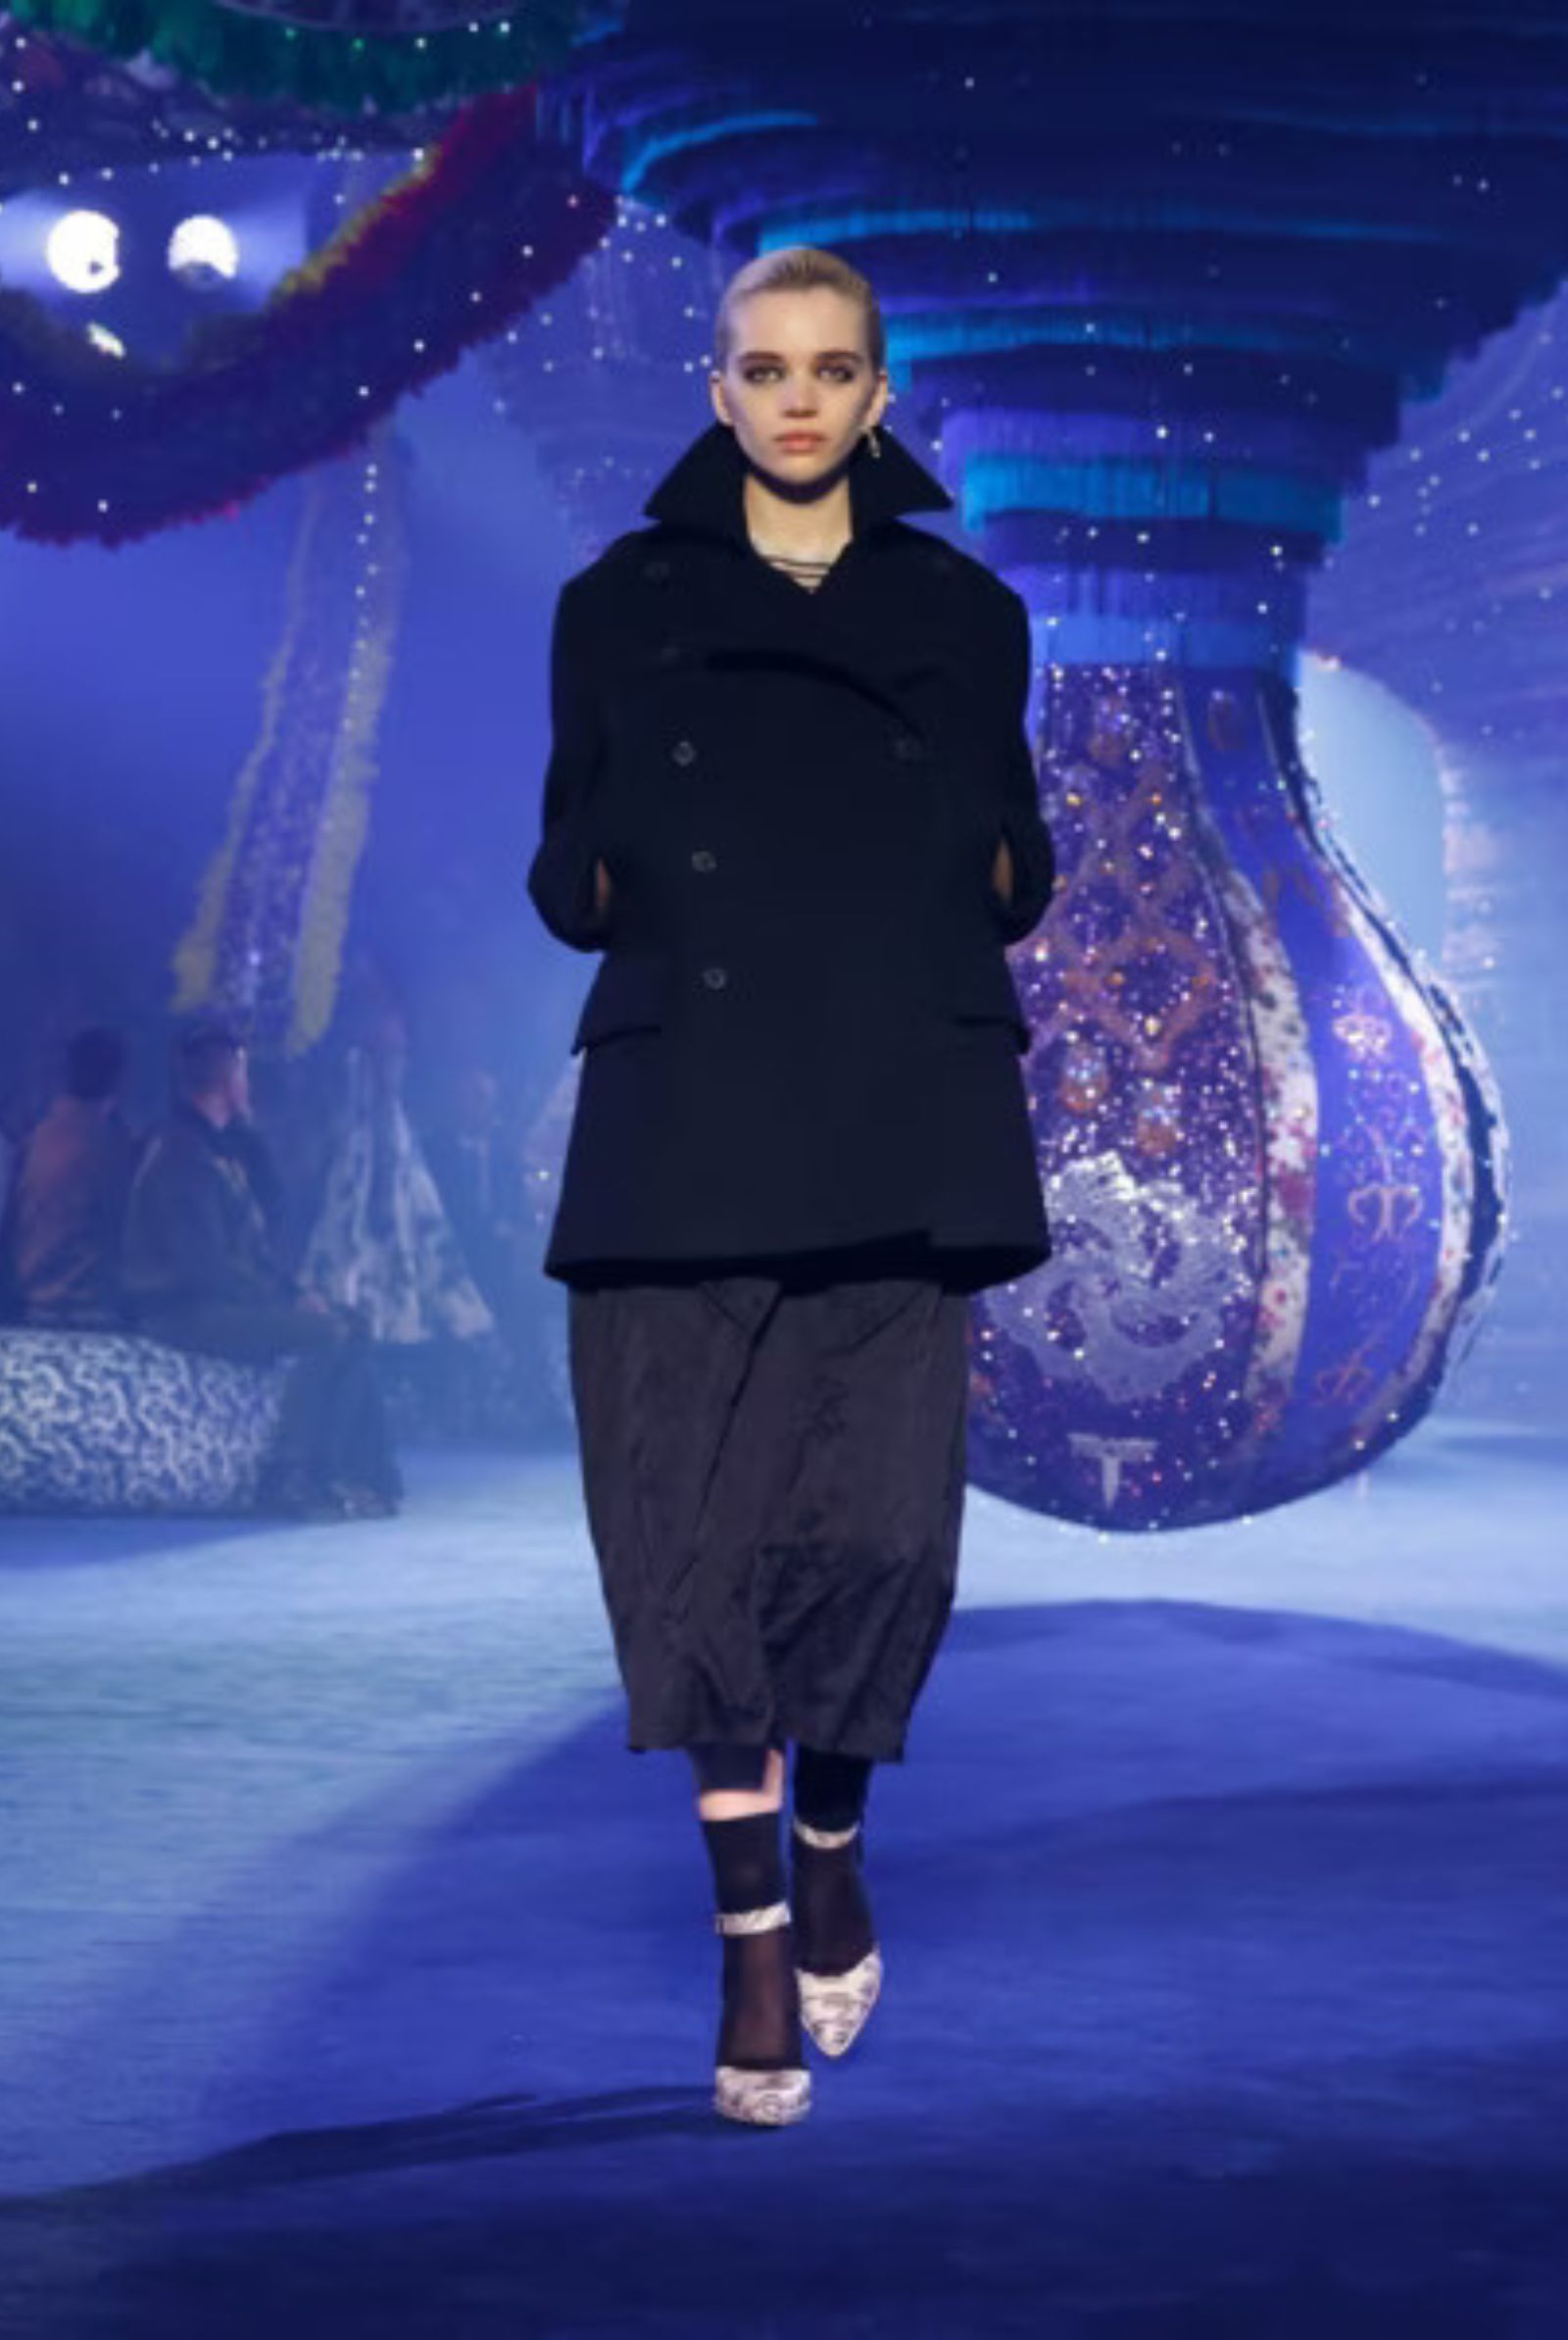 Dior Winter Autumn Womenswear Collection by Creative Director Maria Grazia Chiuri